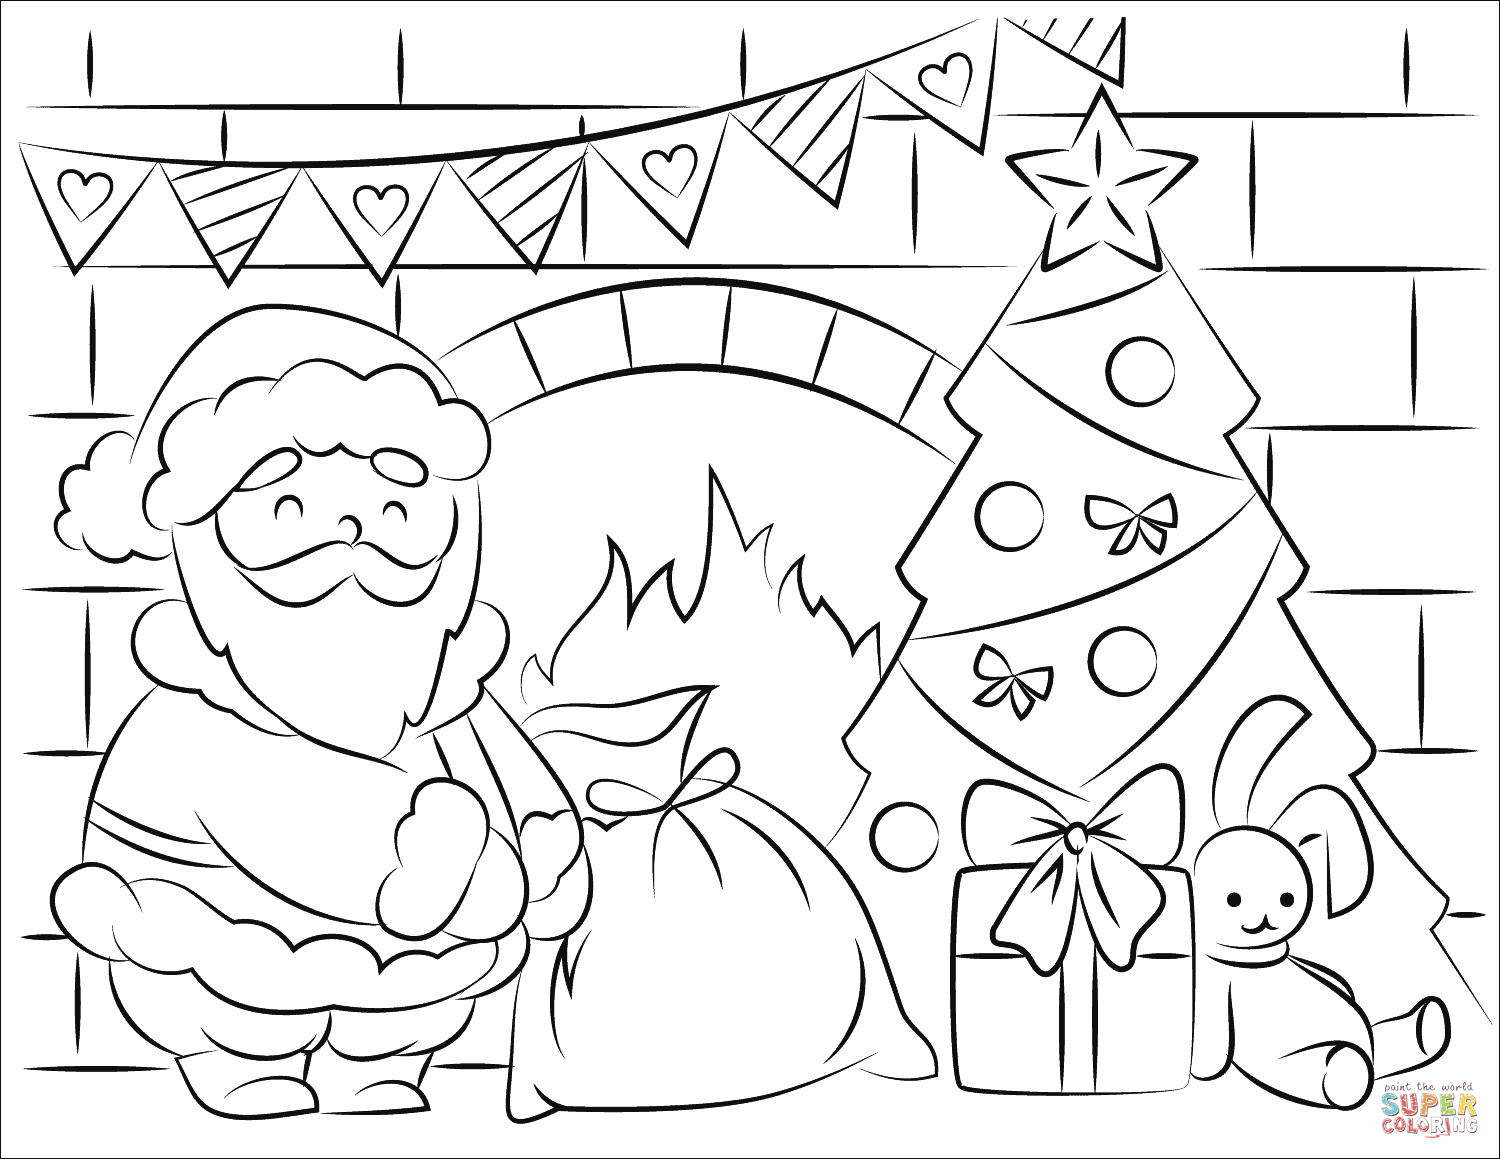 Coloring Pages Santa Santa Claus Bringing Presents In Christmas Coloring Page Free